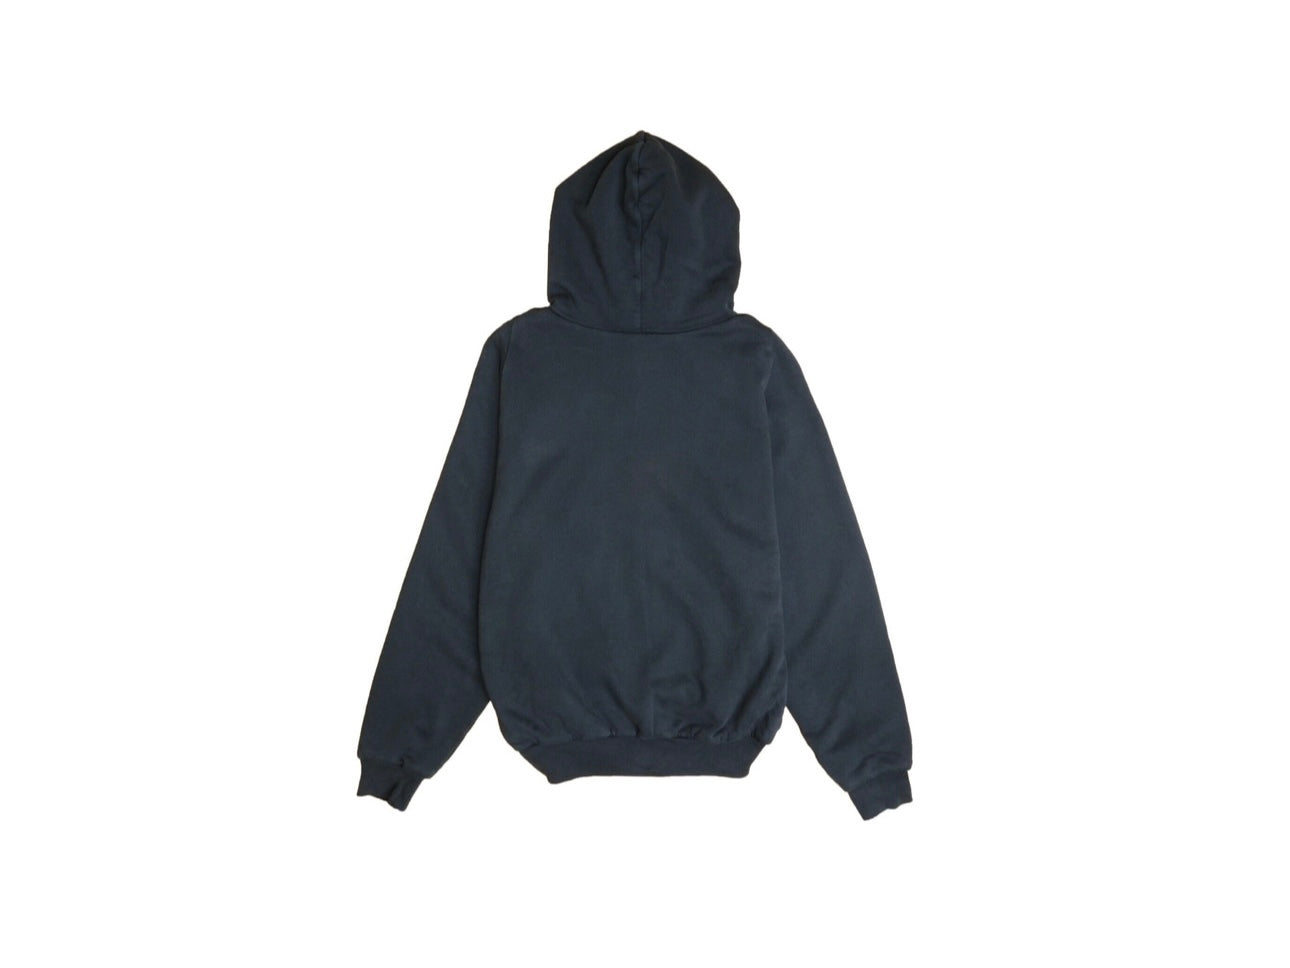 Yeezy gap pullover hoodie black (unreleased)